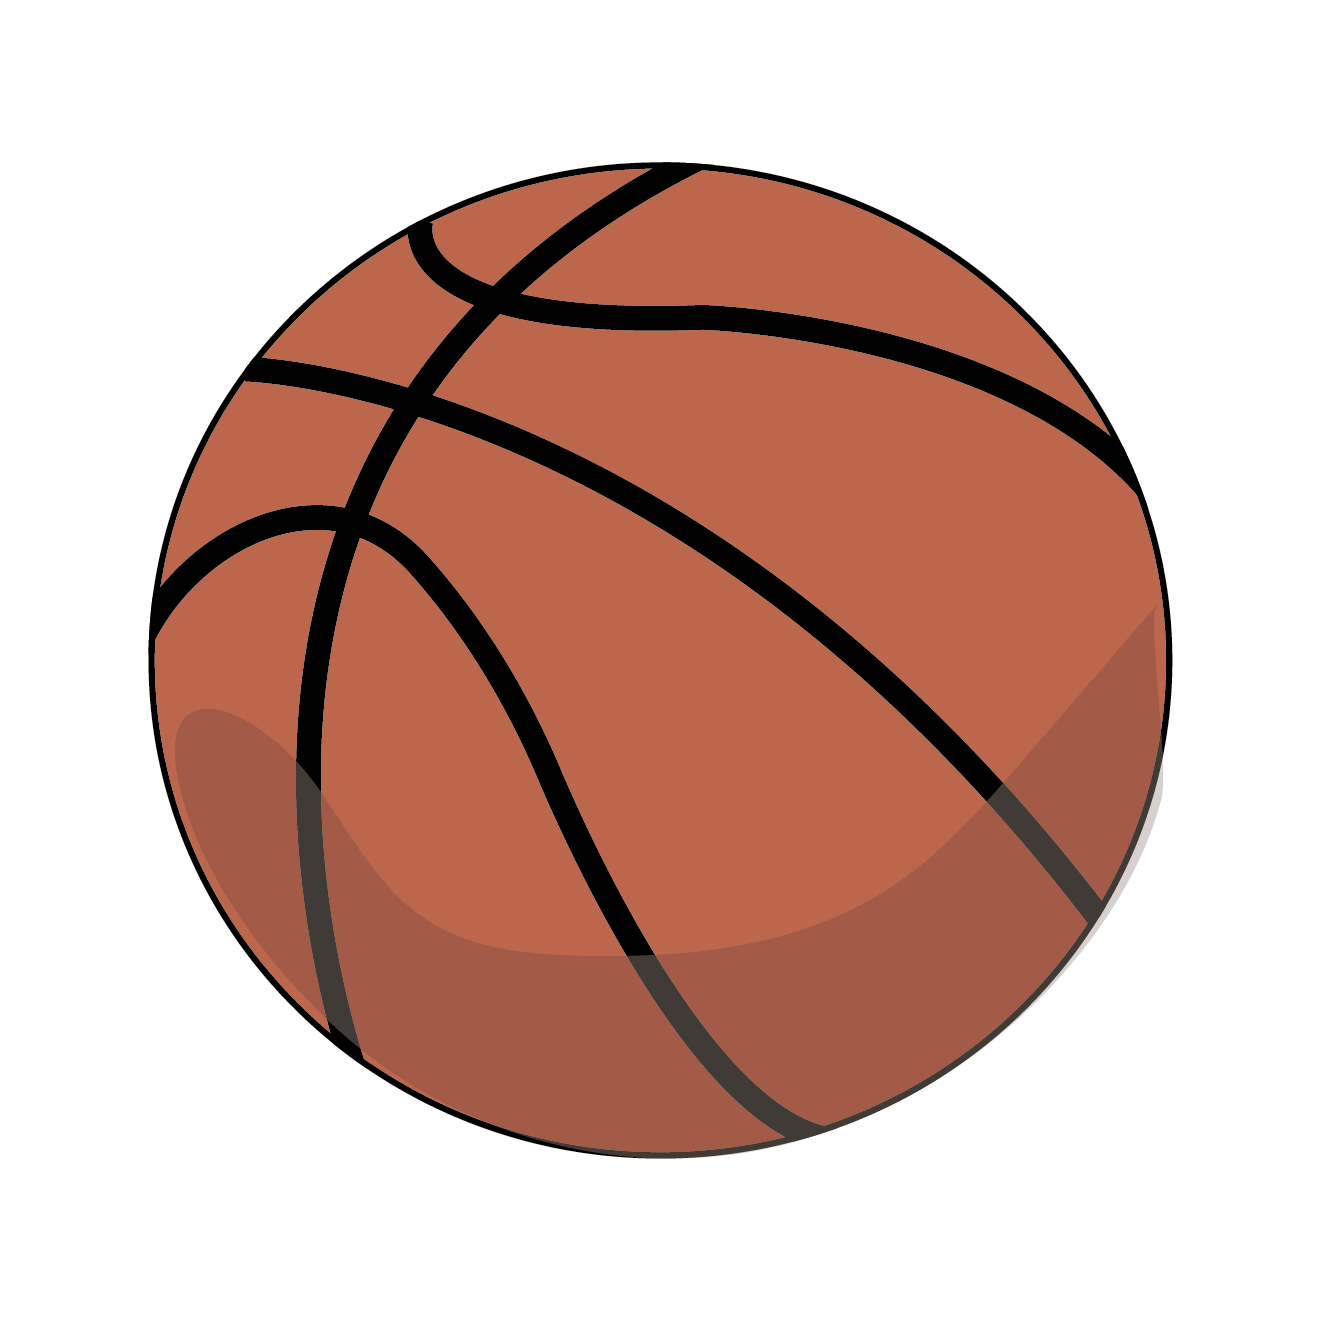 バスケ バスケットボール の 無料 イラスト スポーツ 商用